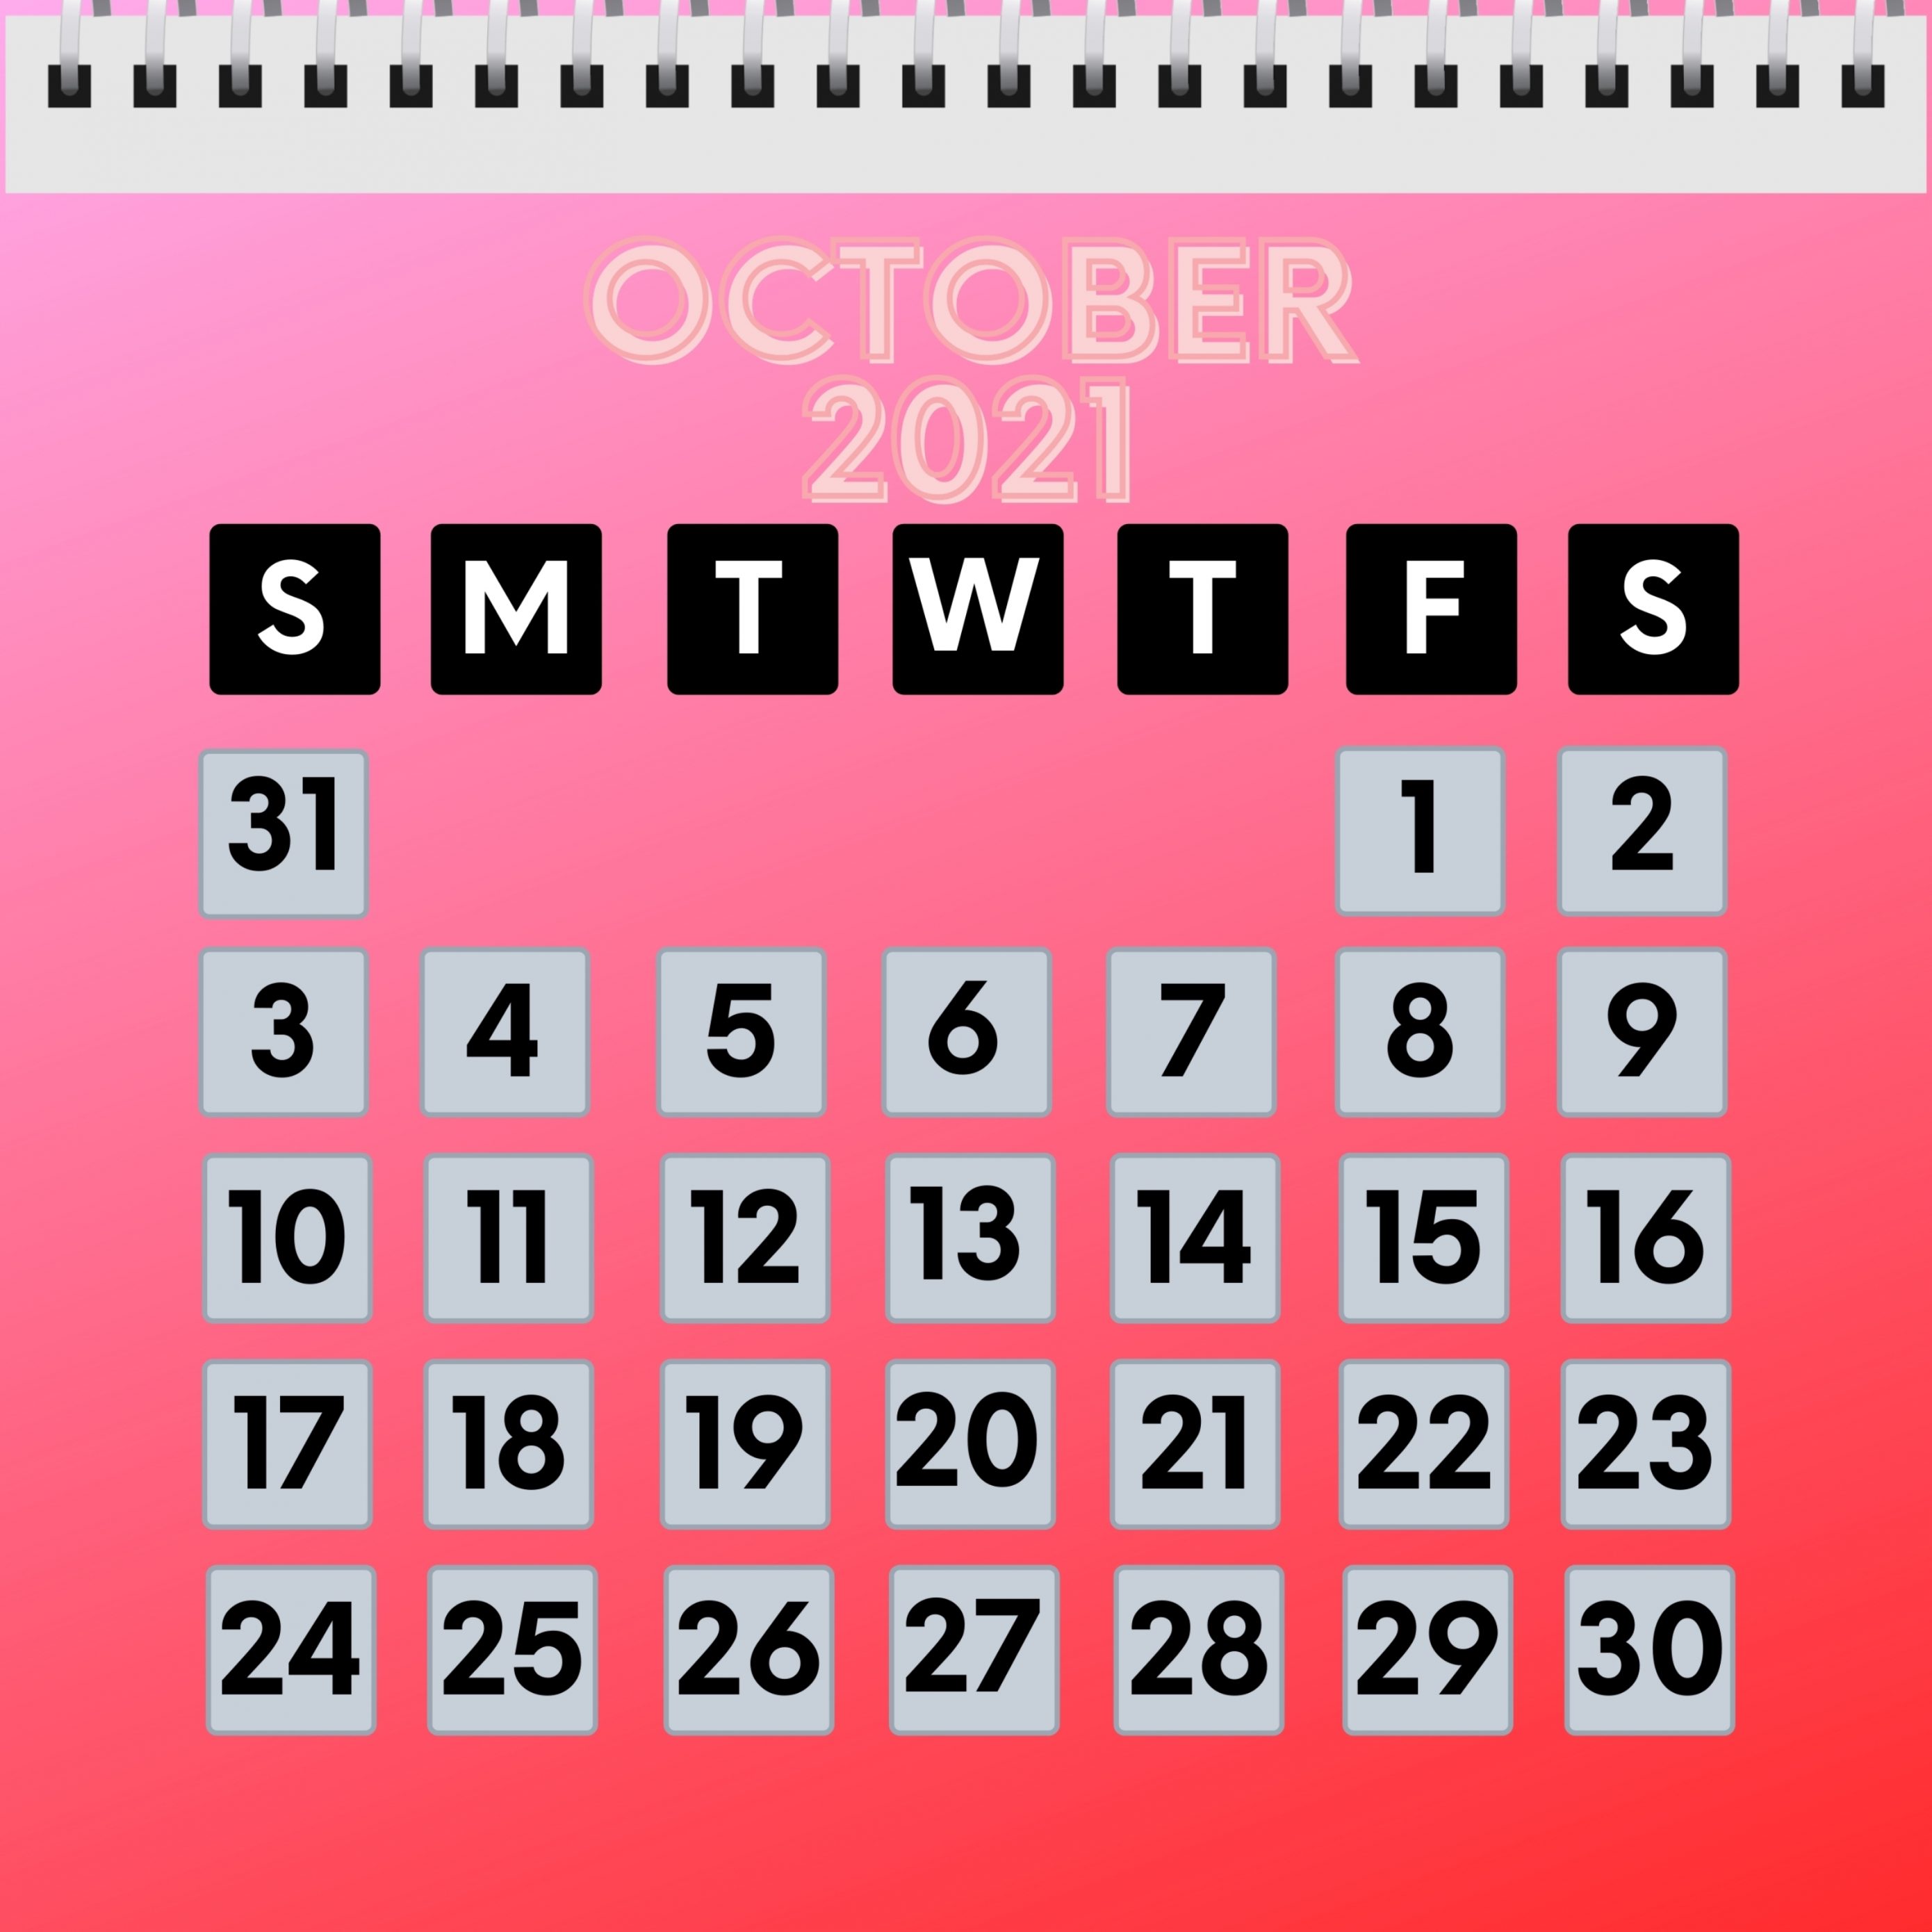 2780x2780 Parallax wallpaper 4k October 2021 Calendar iPad Wallpaper 2780x2780 pixels resolution